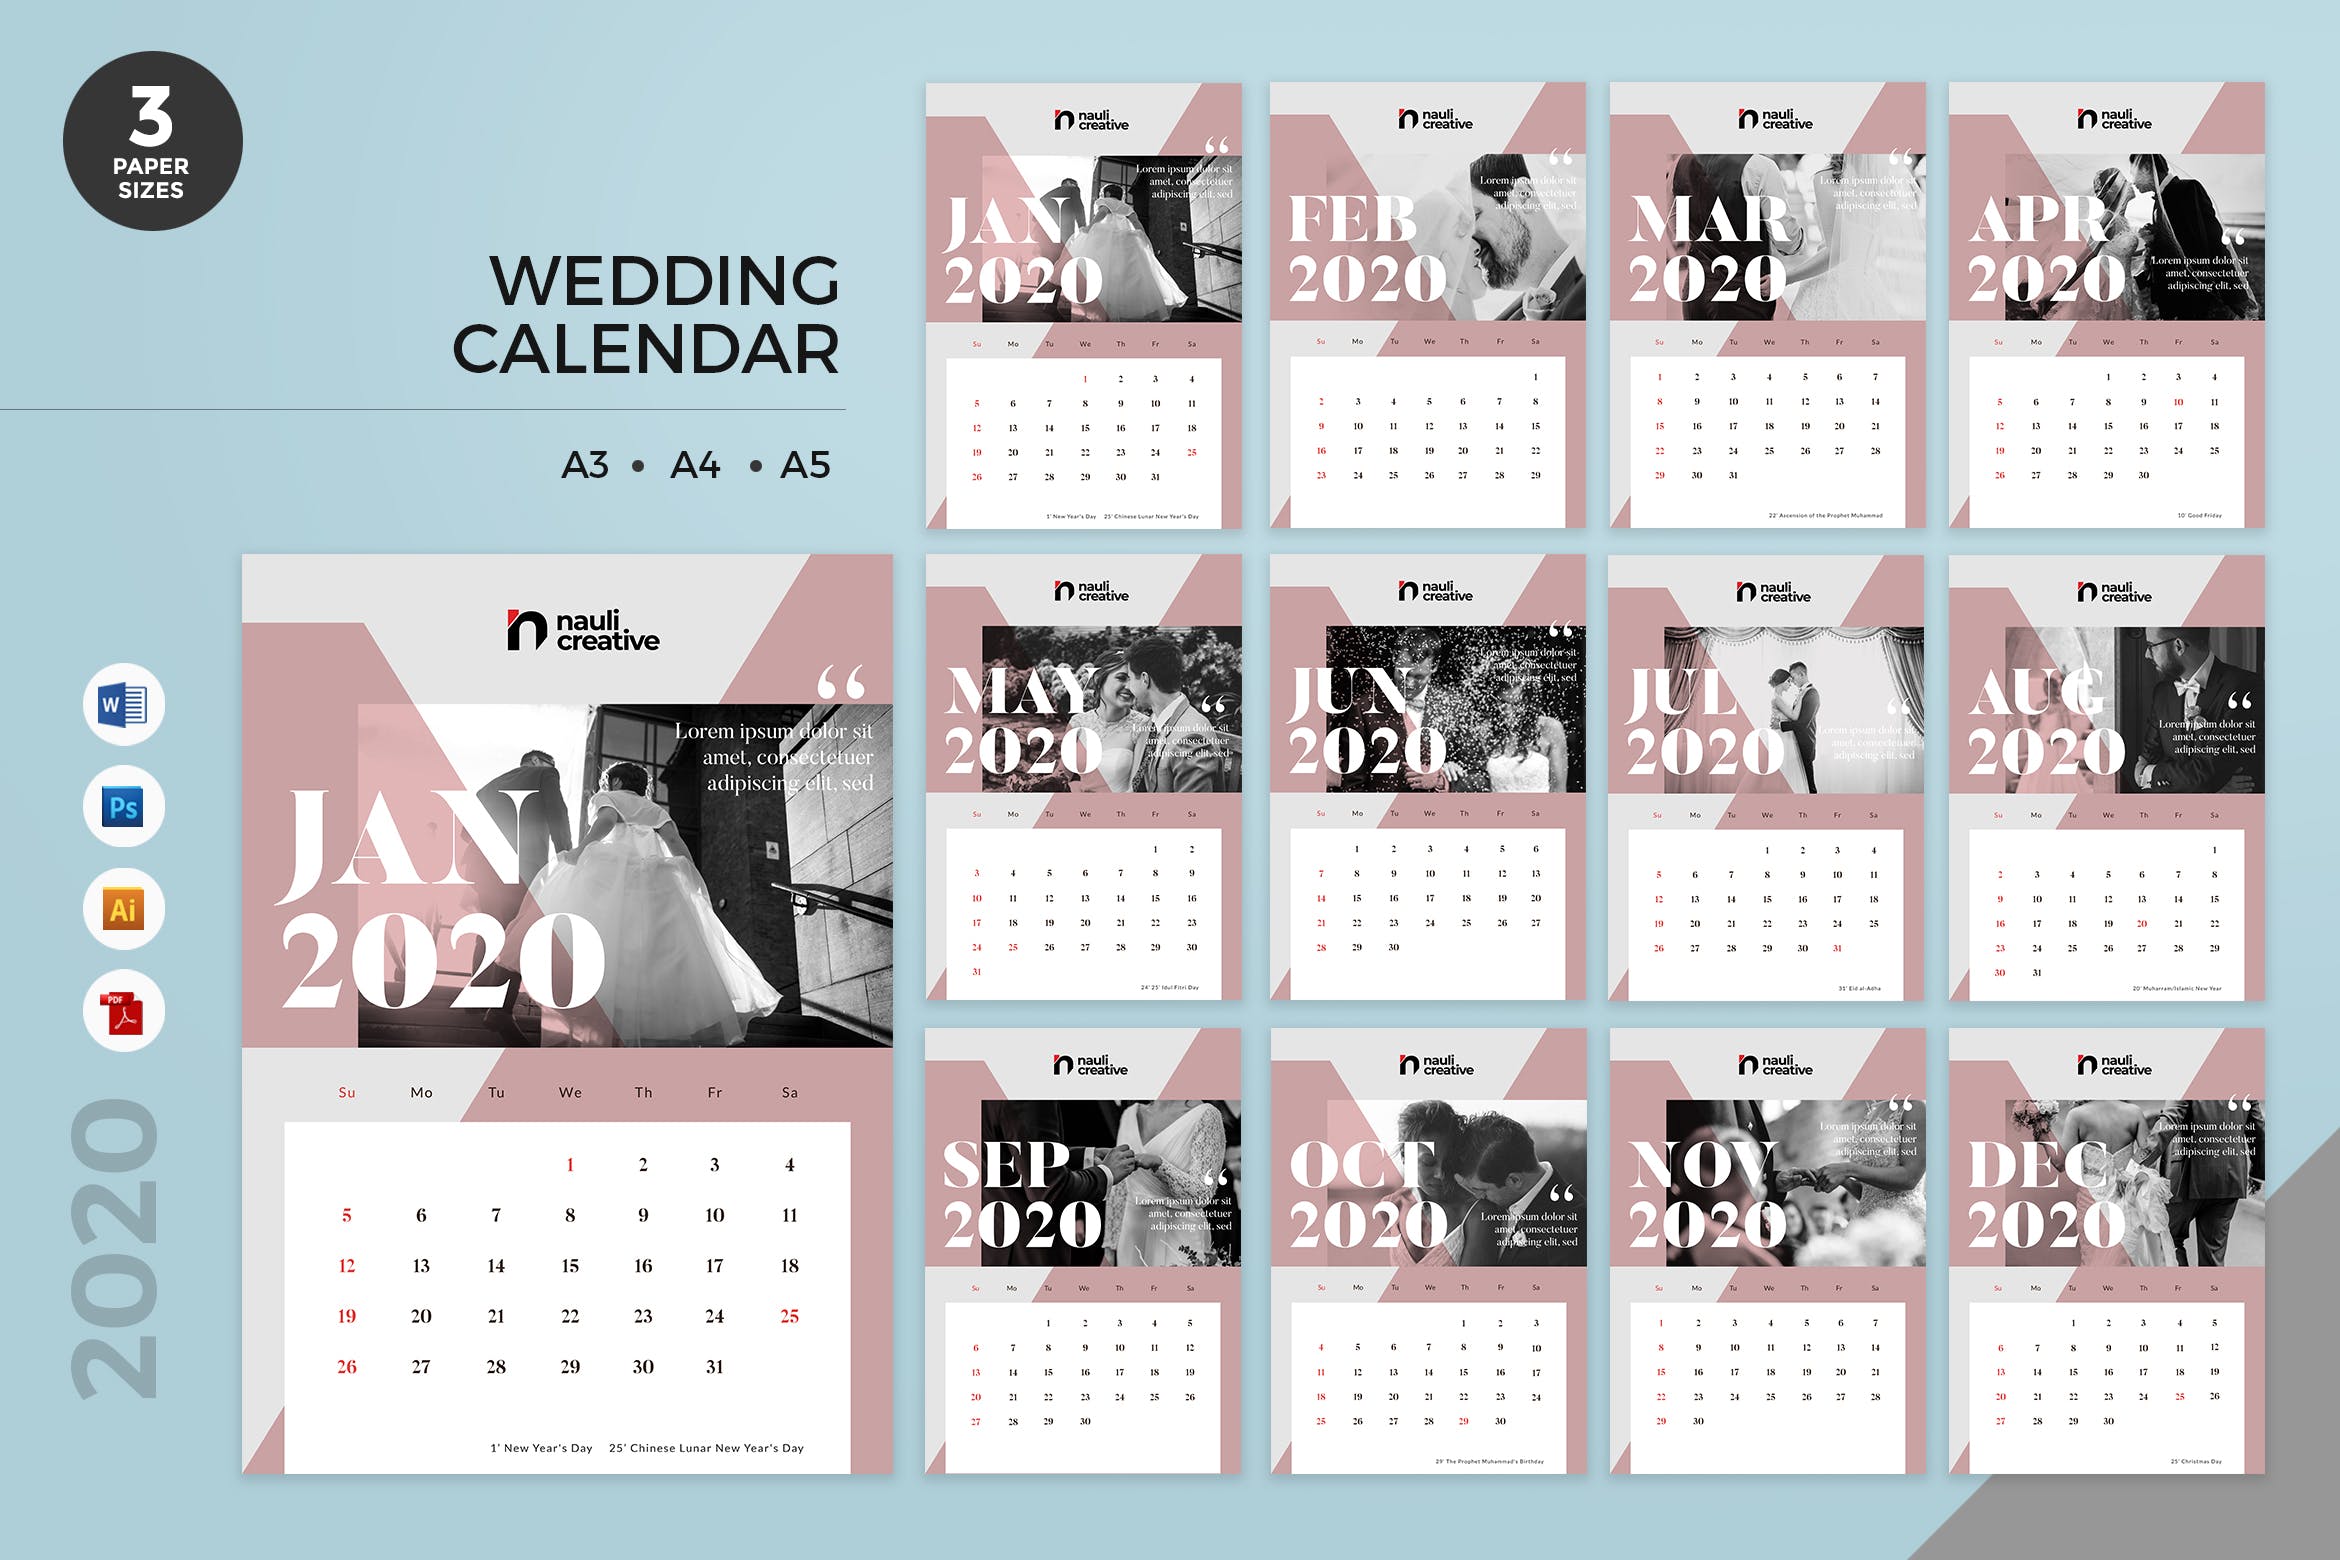 婚纱摄影主题2020年日历表定制设计模板 Wedding Calendar 2020 Calendar – AI, DOC, PSD插图